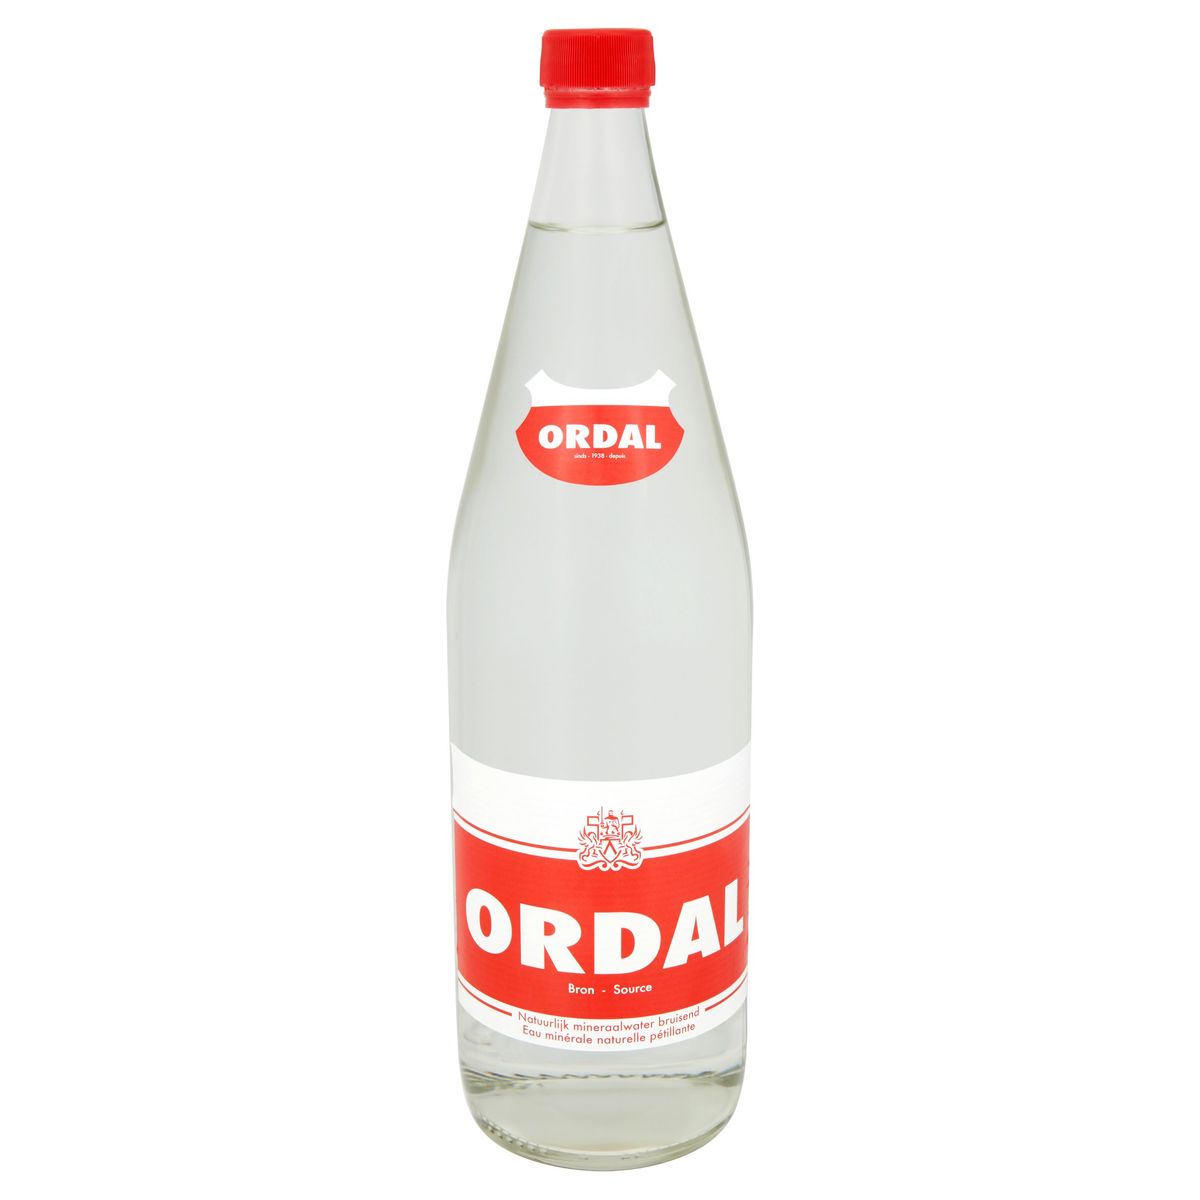 Ordal Source eau minérale naturelle pétillante 1 L